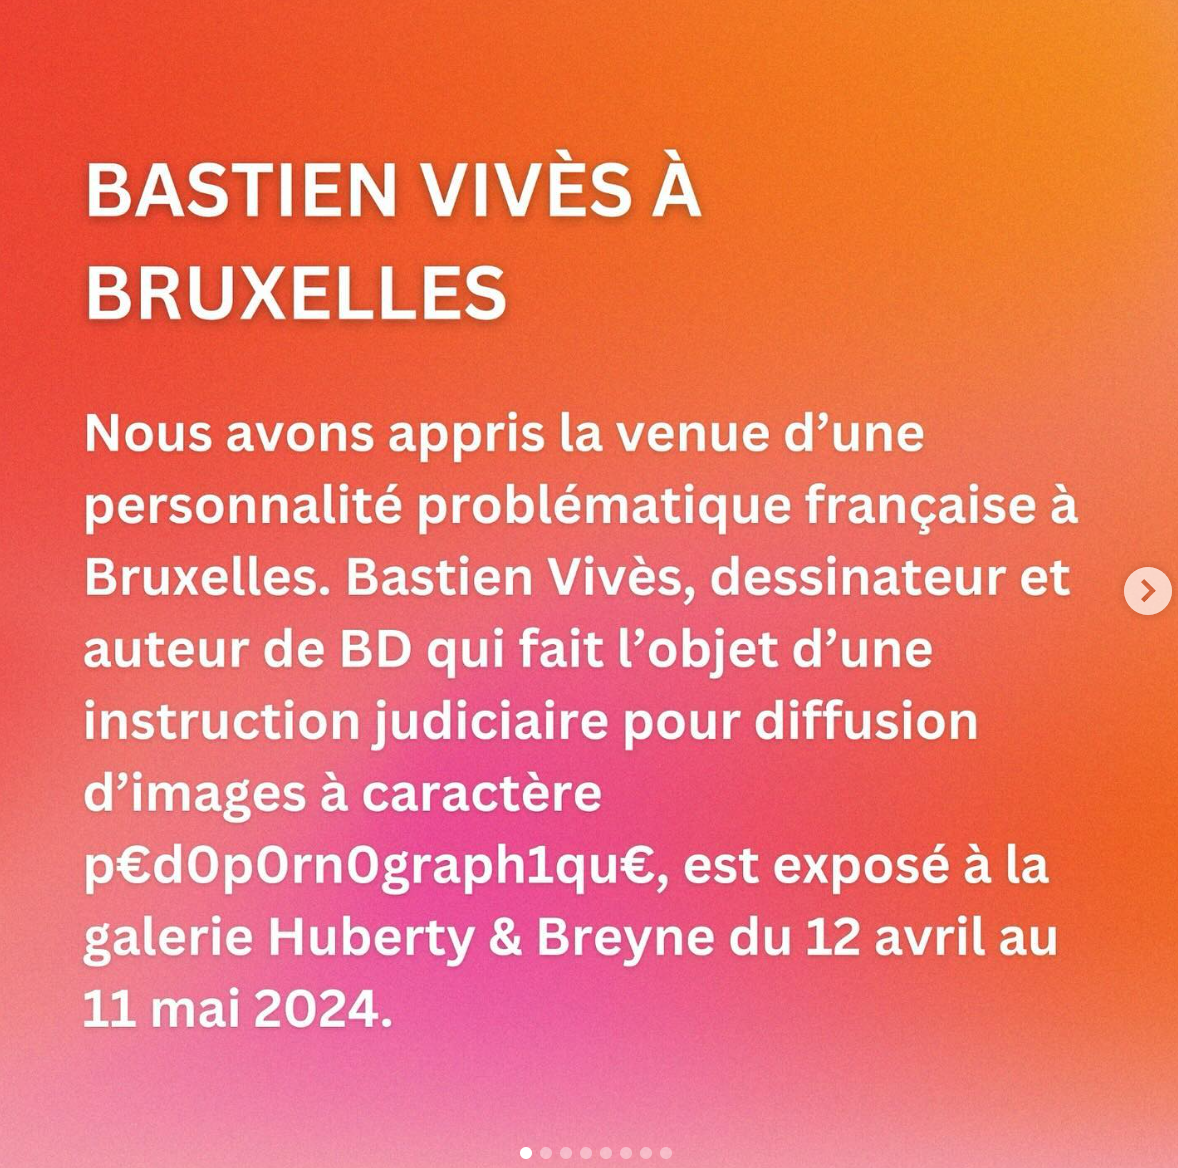 Une nouvelle pétition contre Bastien Vivès à l'occasion de son exposition chez Huberty & Breyne à Bruxelles